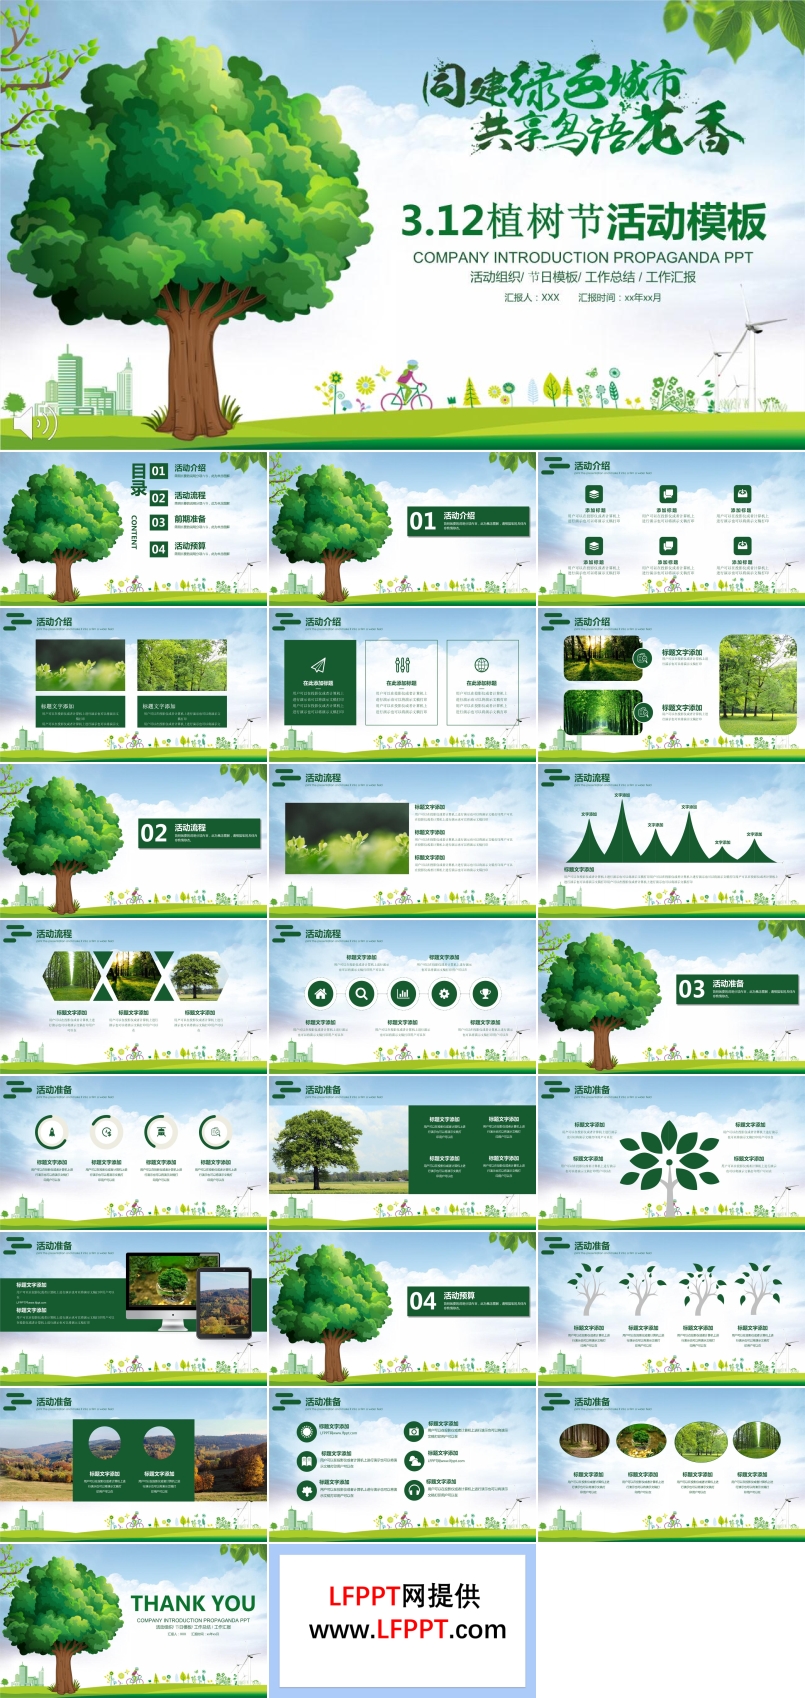 312植树节共建绿色家园活动策划计划PPT模板